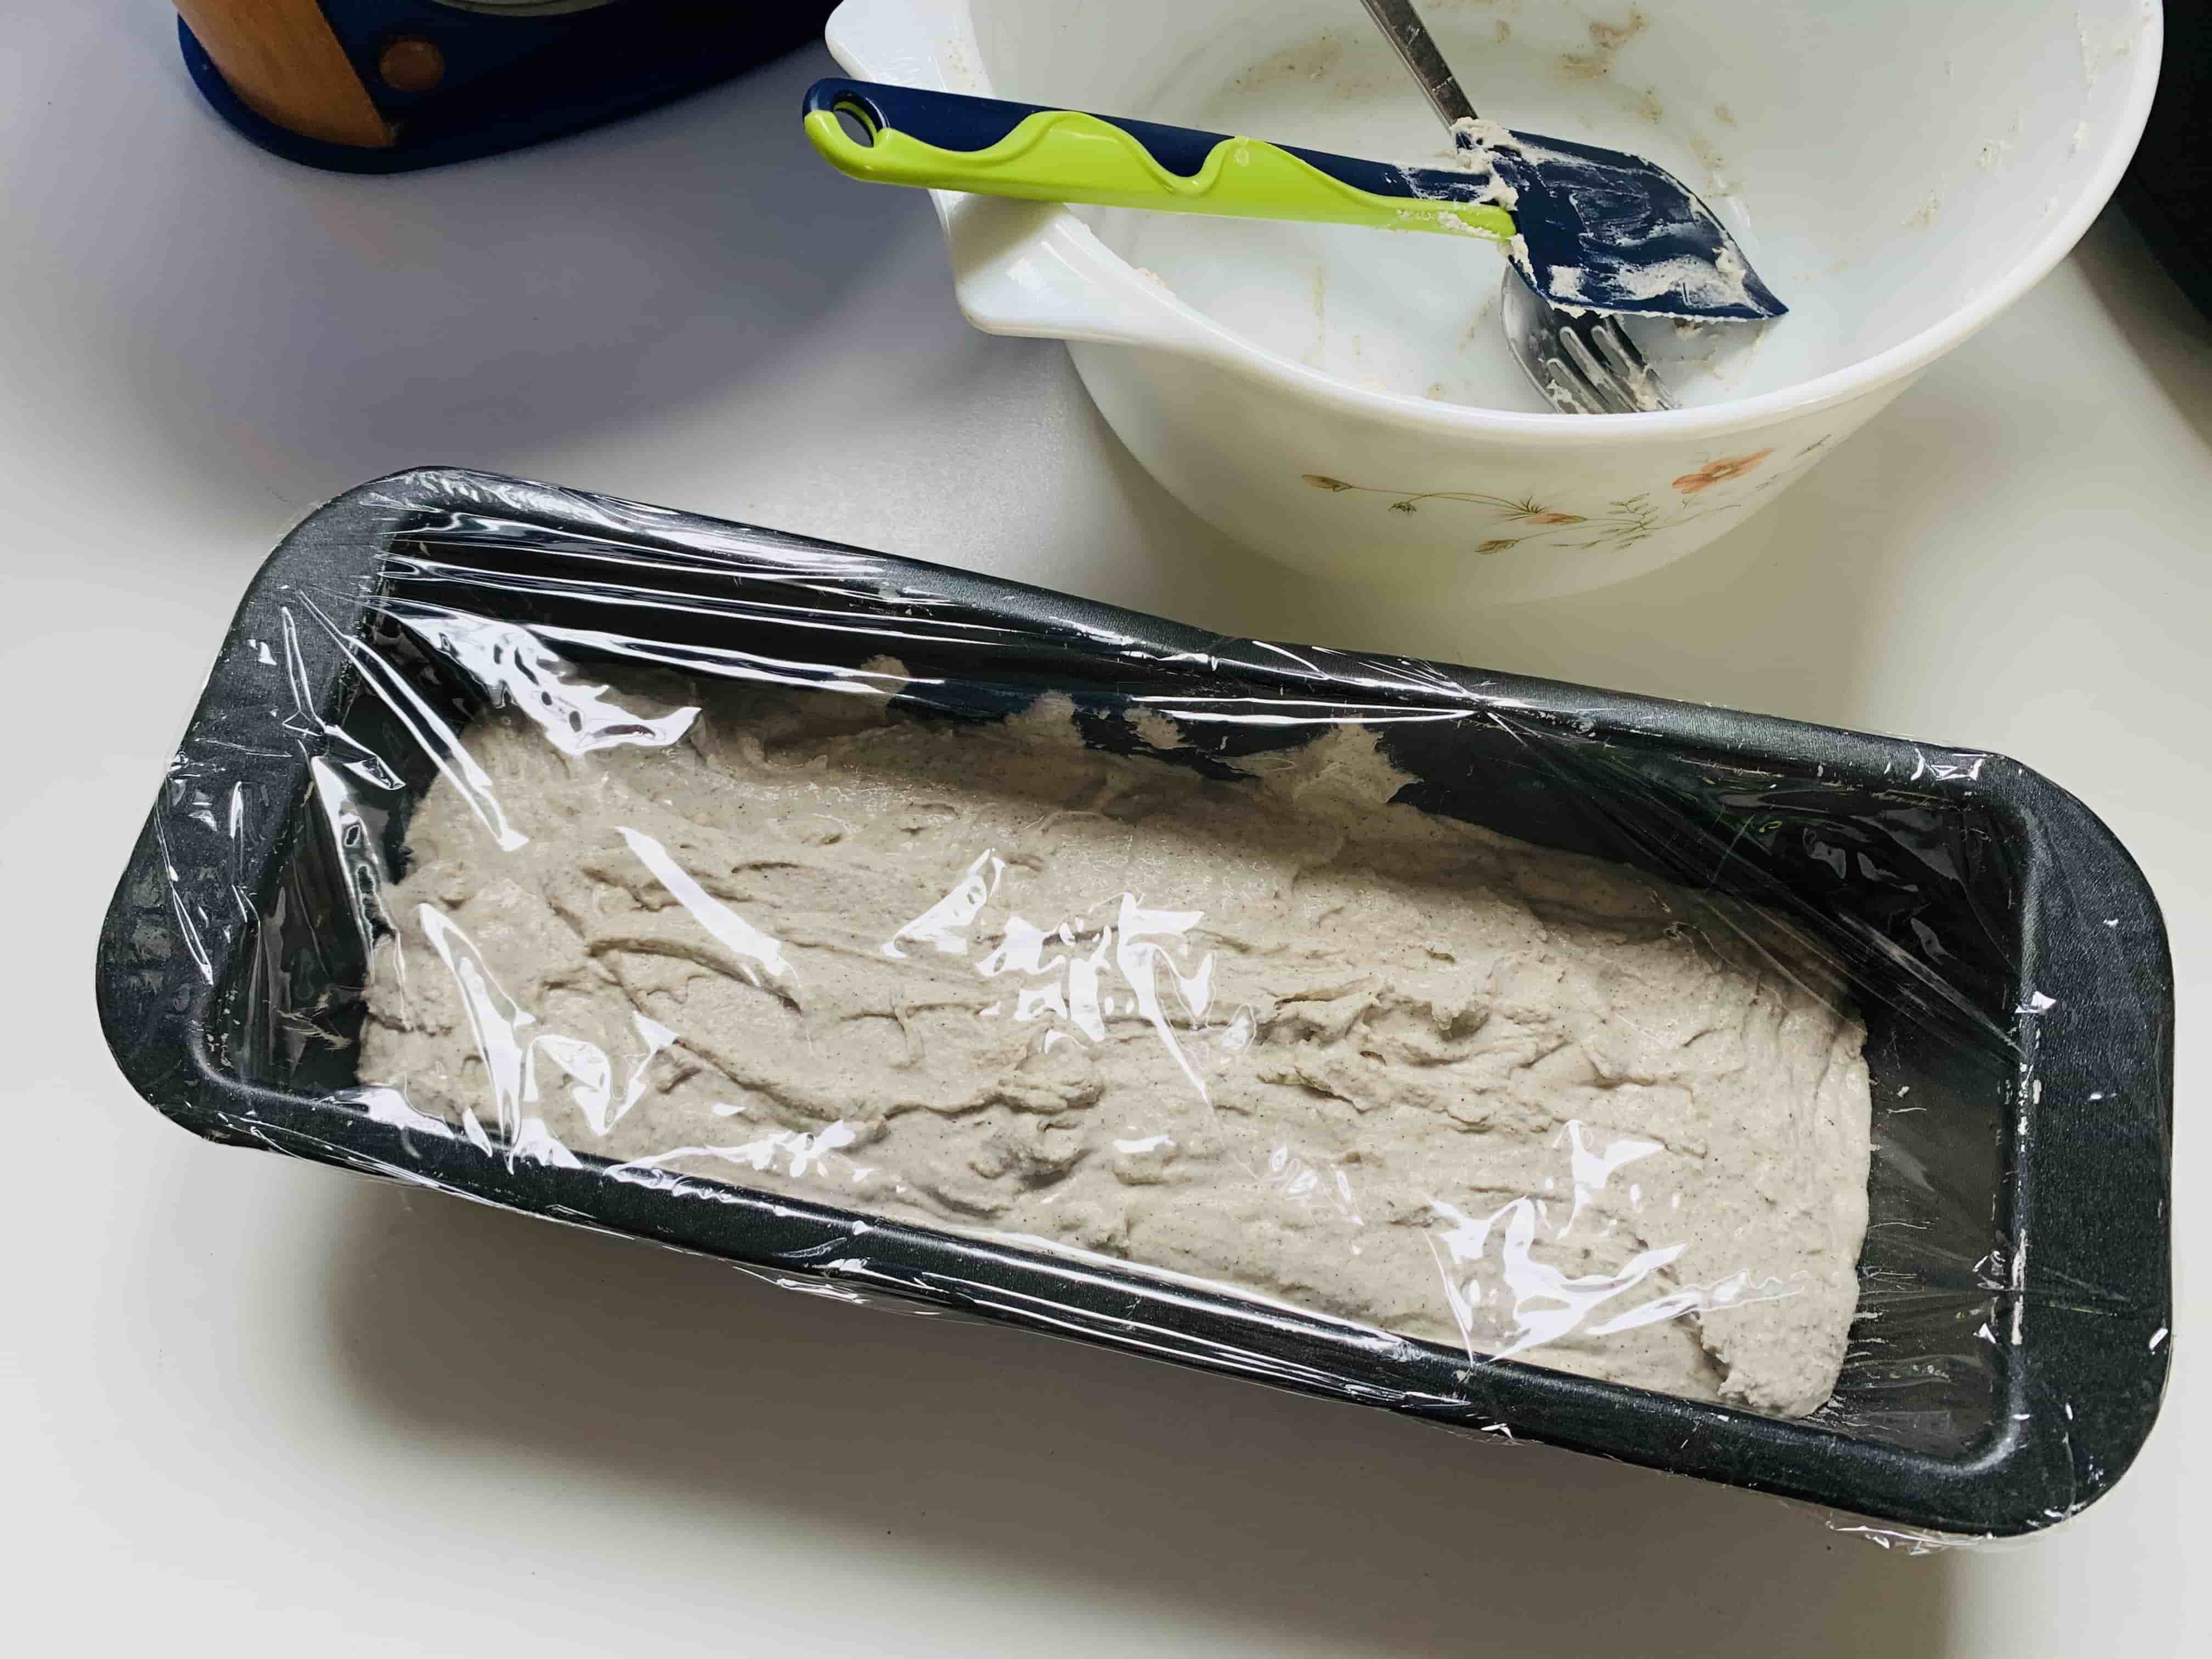 versare il composto del pane saraceno nel contenitore di cottura